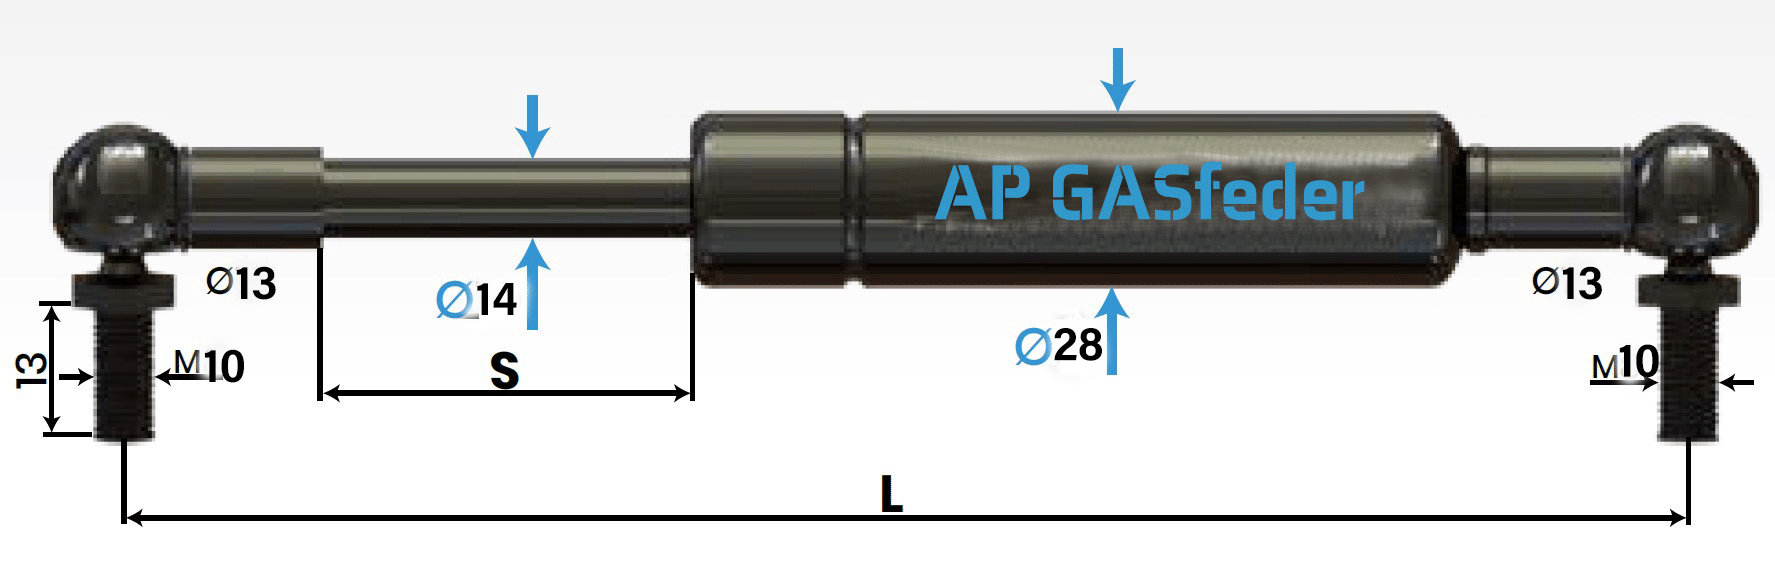 Bild von AP GASfeder 1500N, 14/28, Hub(S): 500 mm, Länge (L): 1135 mm,  Alternatvie SRST.2397LT